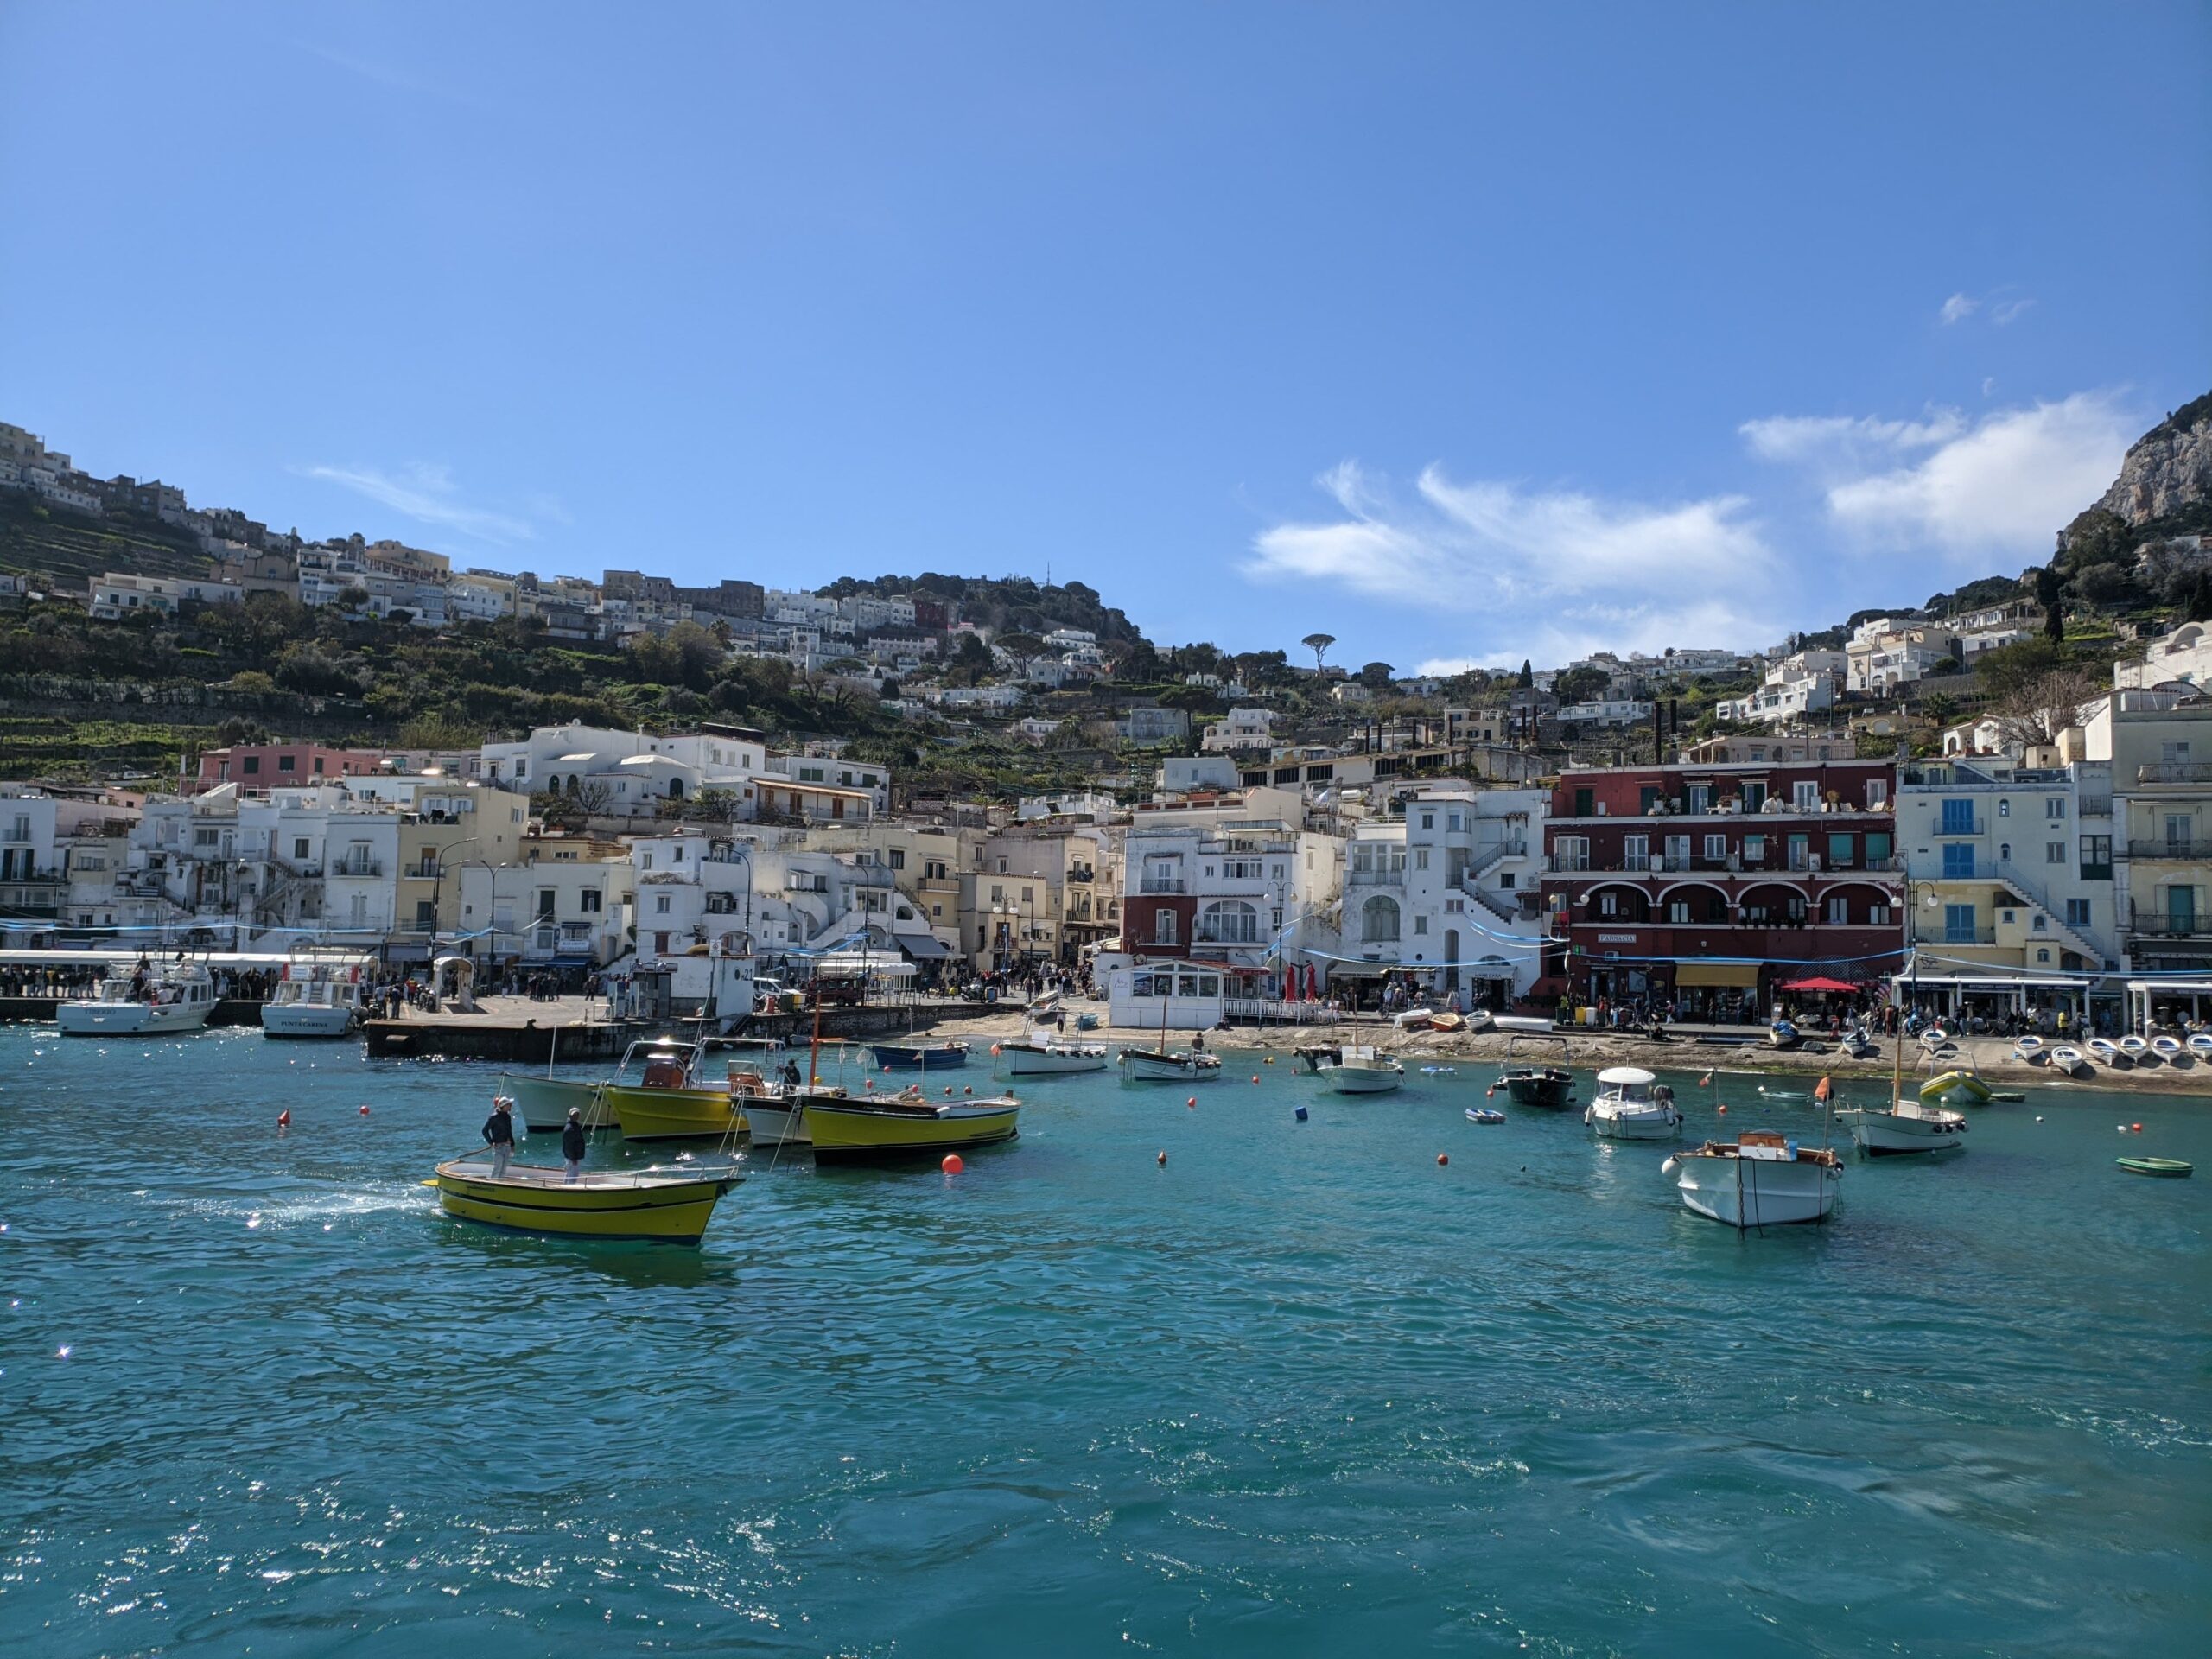 Foto de Capri vista a partir do mar, é possível ver a cidade com casas predominantes brancas atrás da praia e que sobem a encosta no entorno. O mar está azul esmeralda e com alguns barcos navegando.